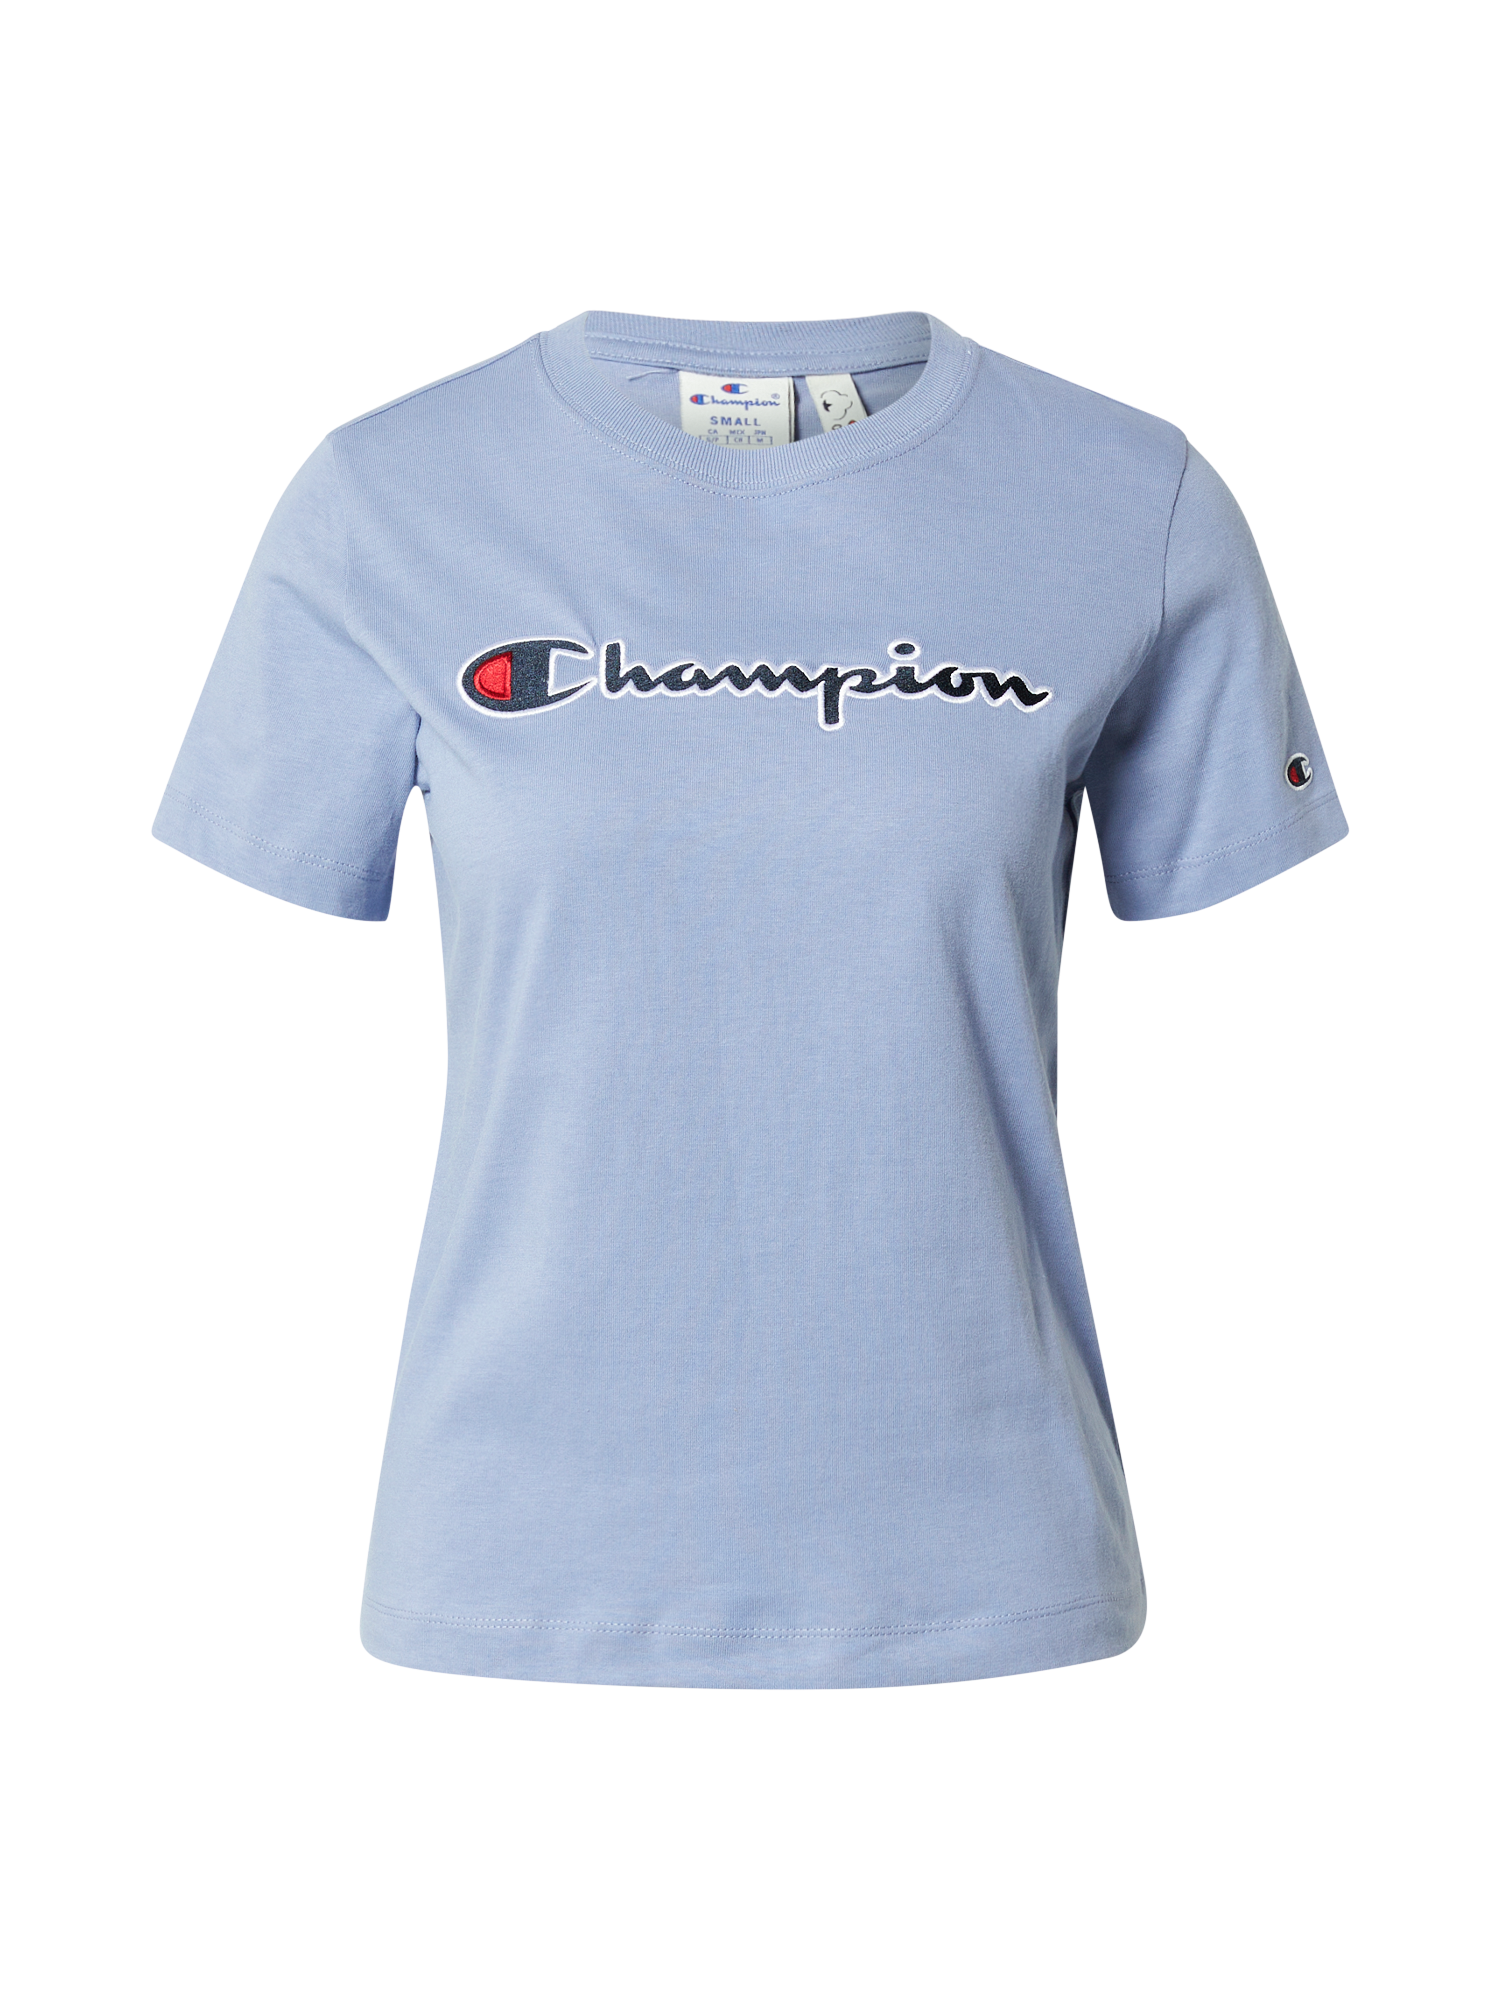 Koszulki & topy Kobiety Champion Authentic Athletic Apparel Koszulka w kolorze Podpalany Niebieski, Granatowym 